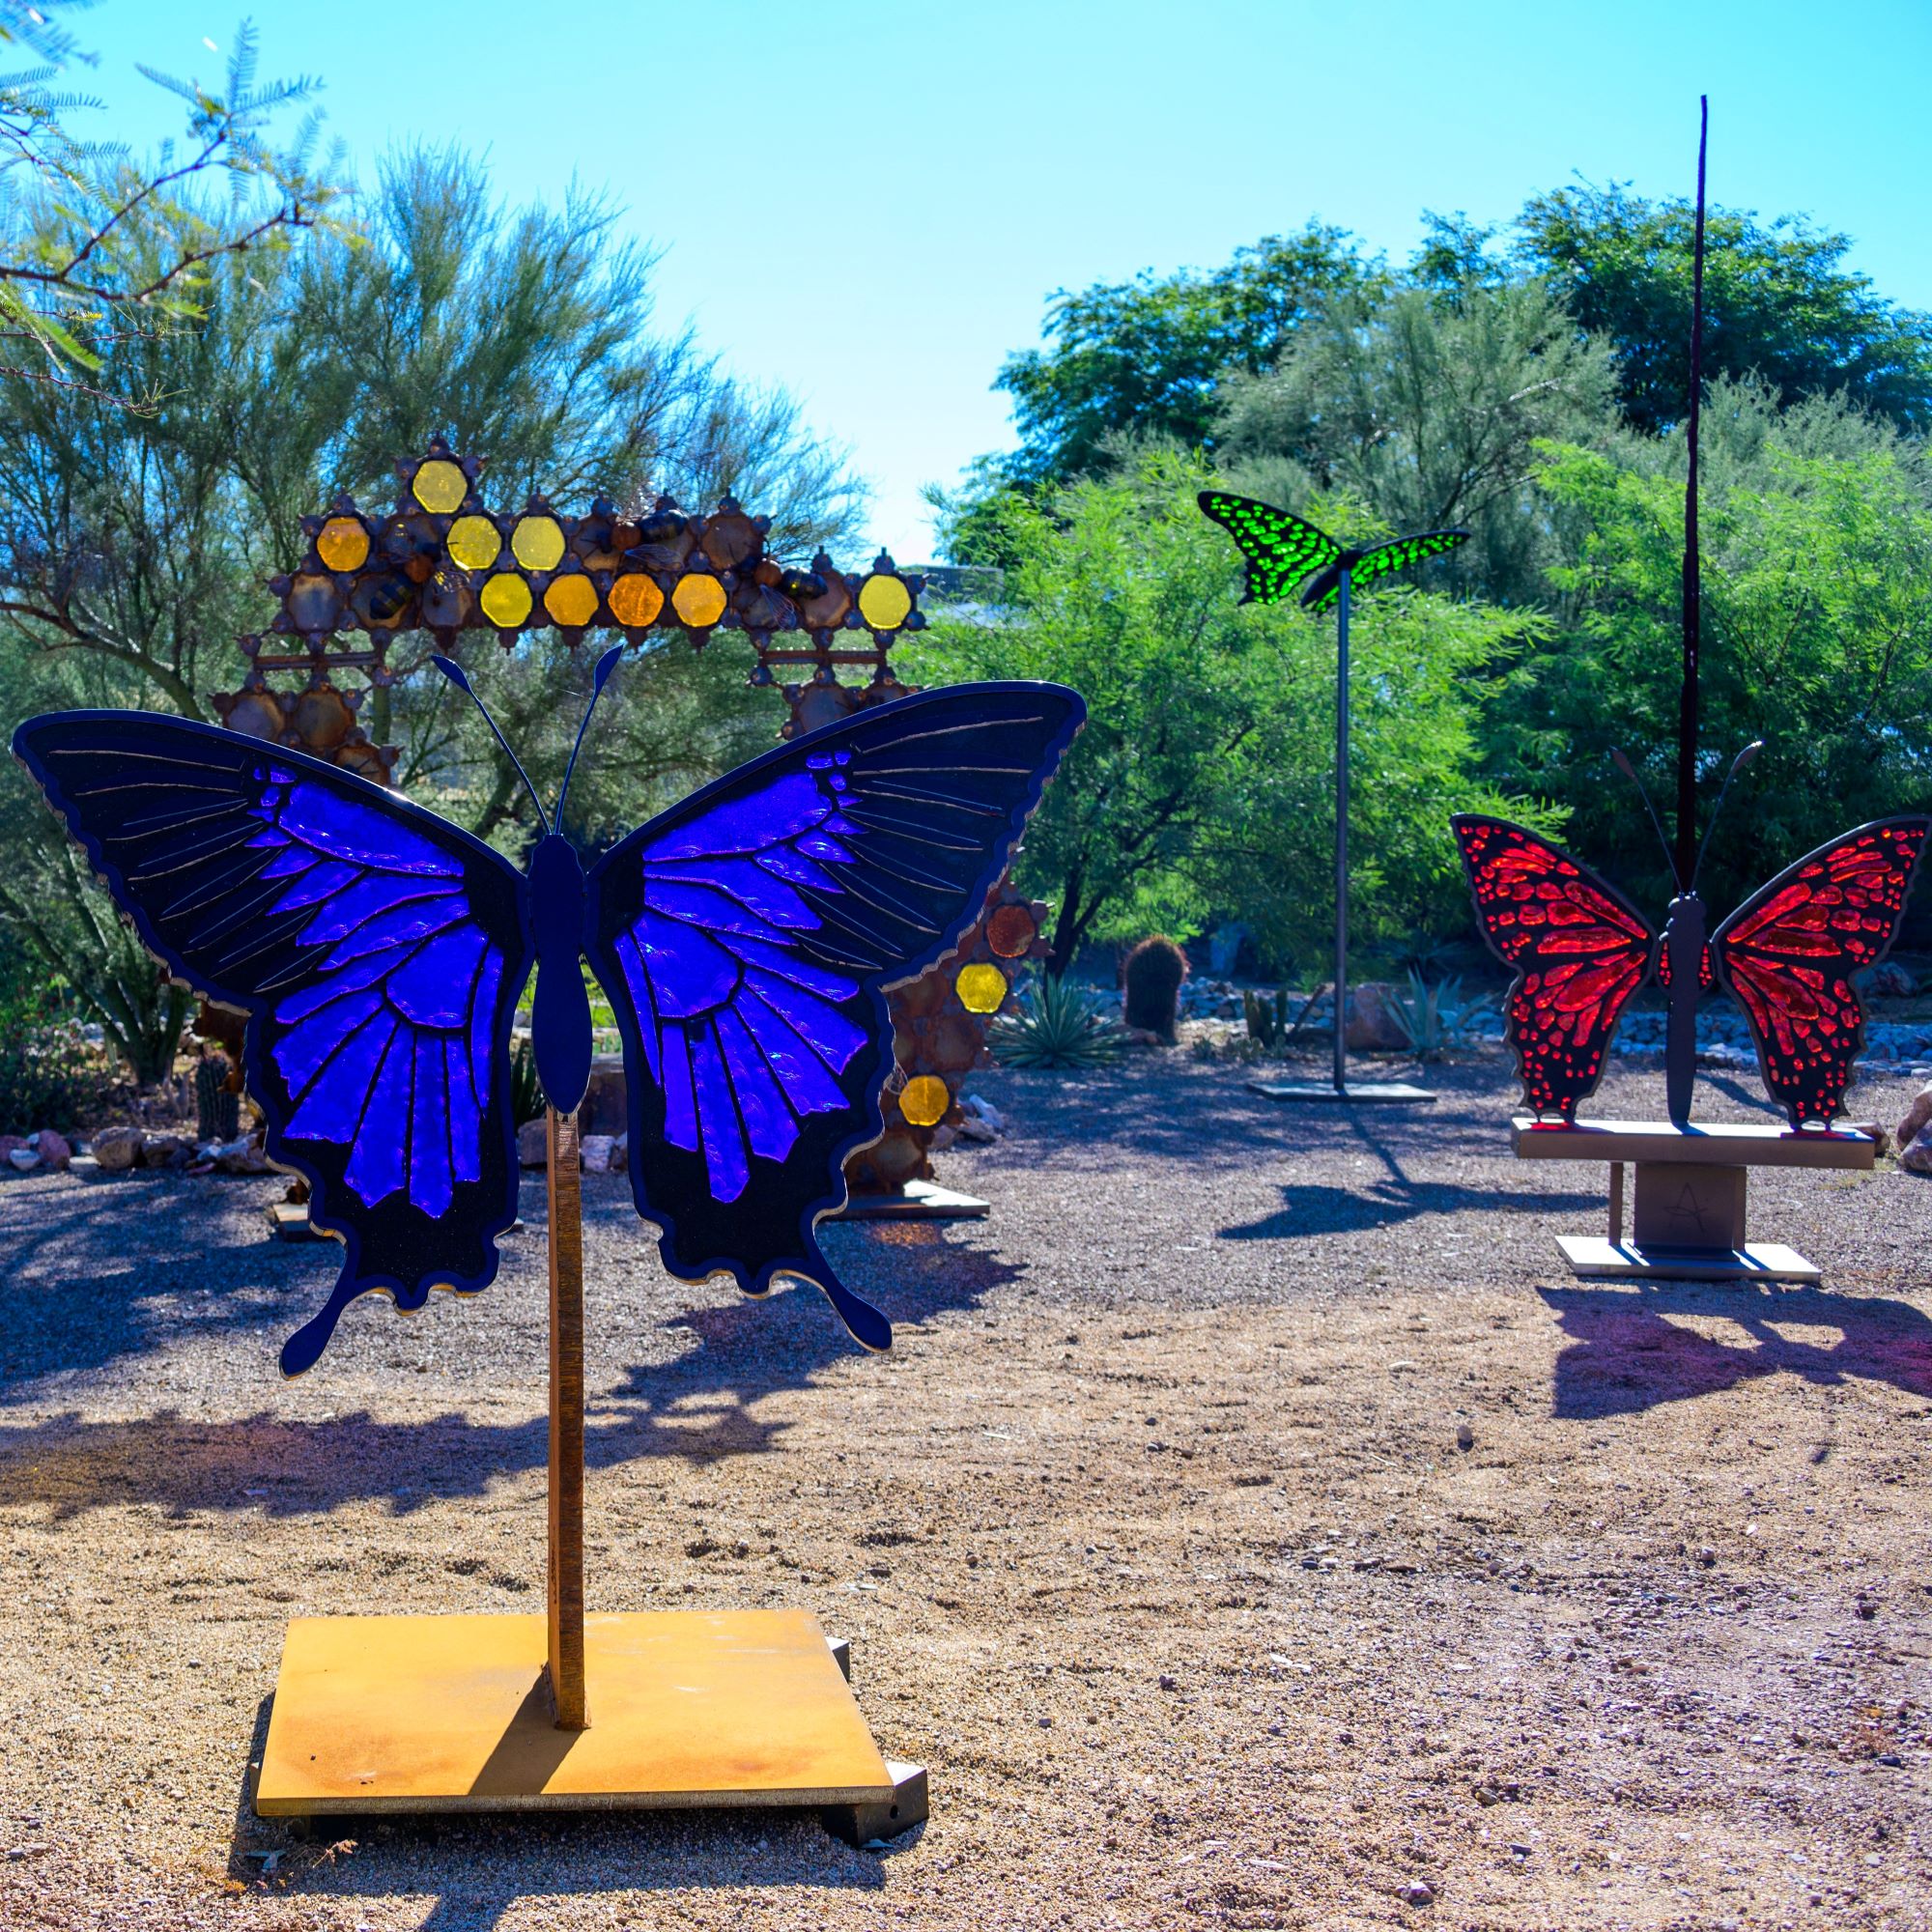 Glass in Flight sculptures shine in the sunlight of an arid garden